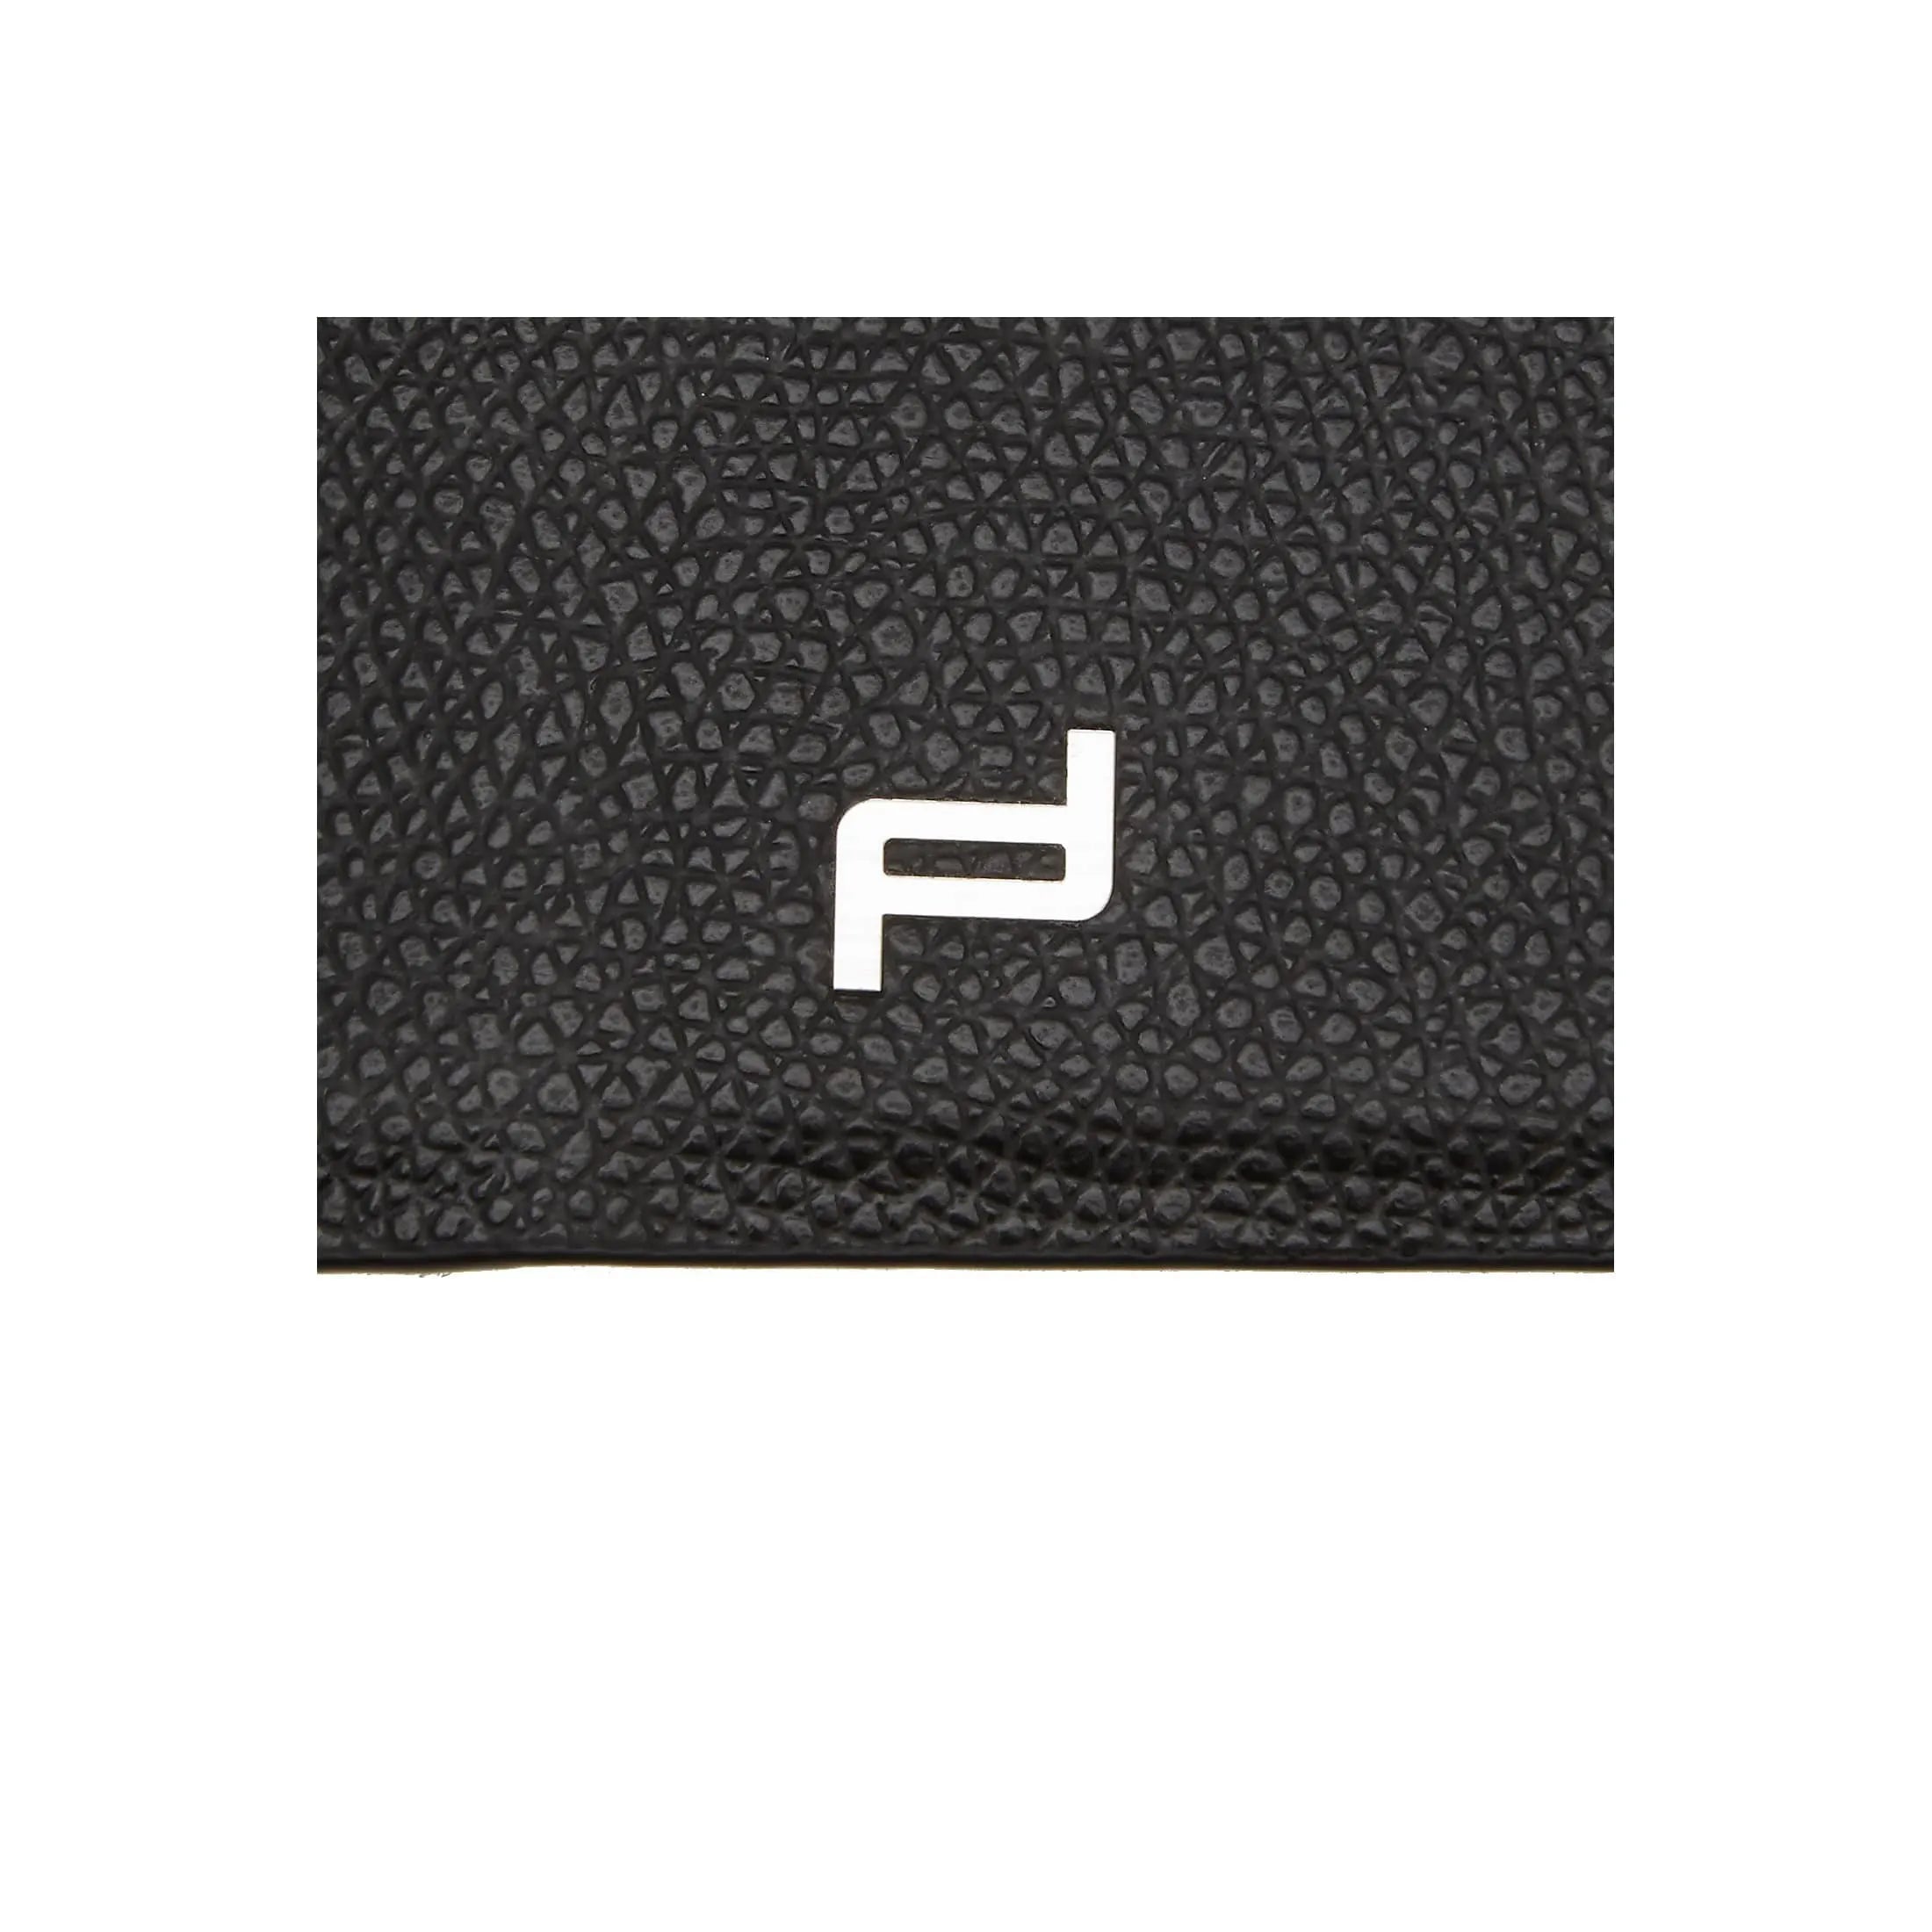 Housse Porsche Design French Classic 3.0 iPad Mini 2 2 20 cm - noire